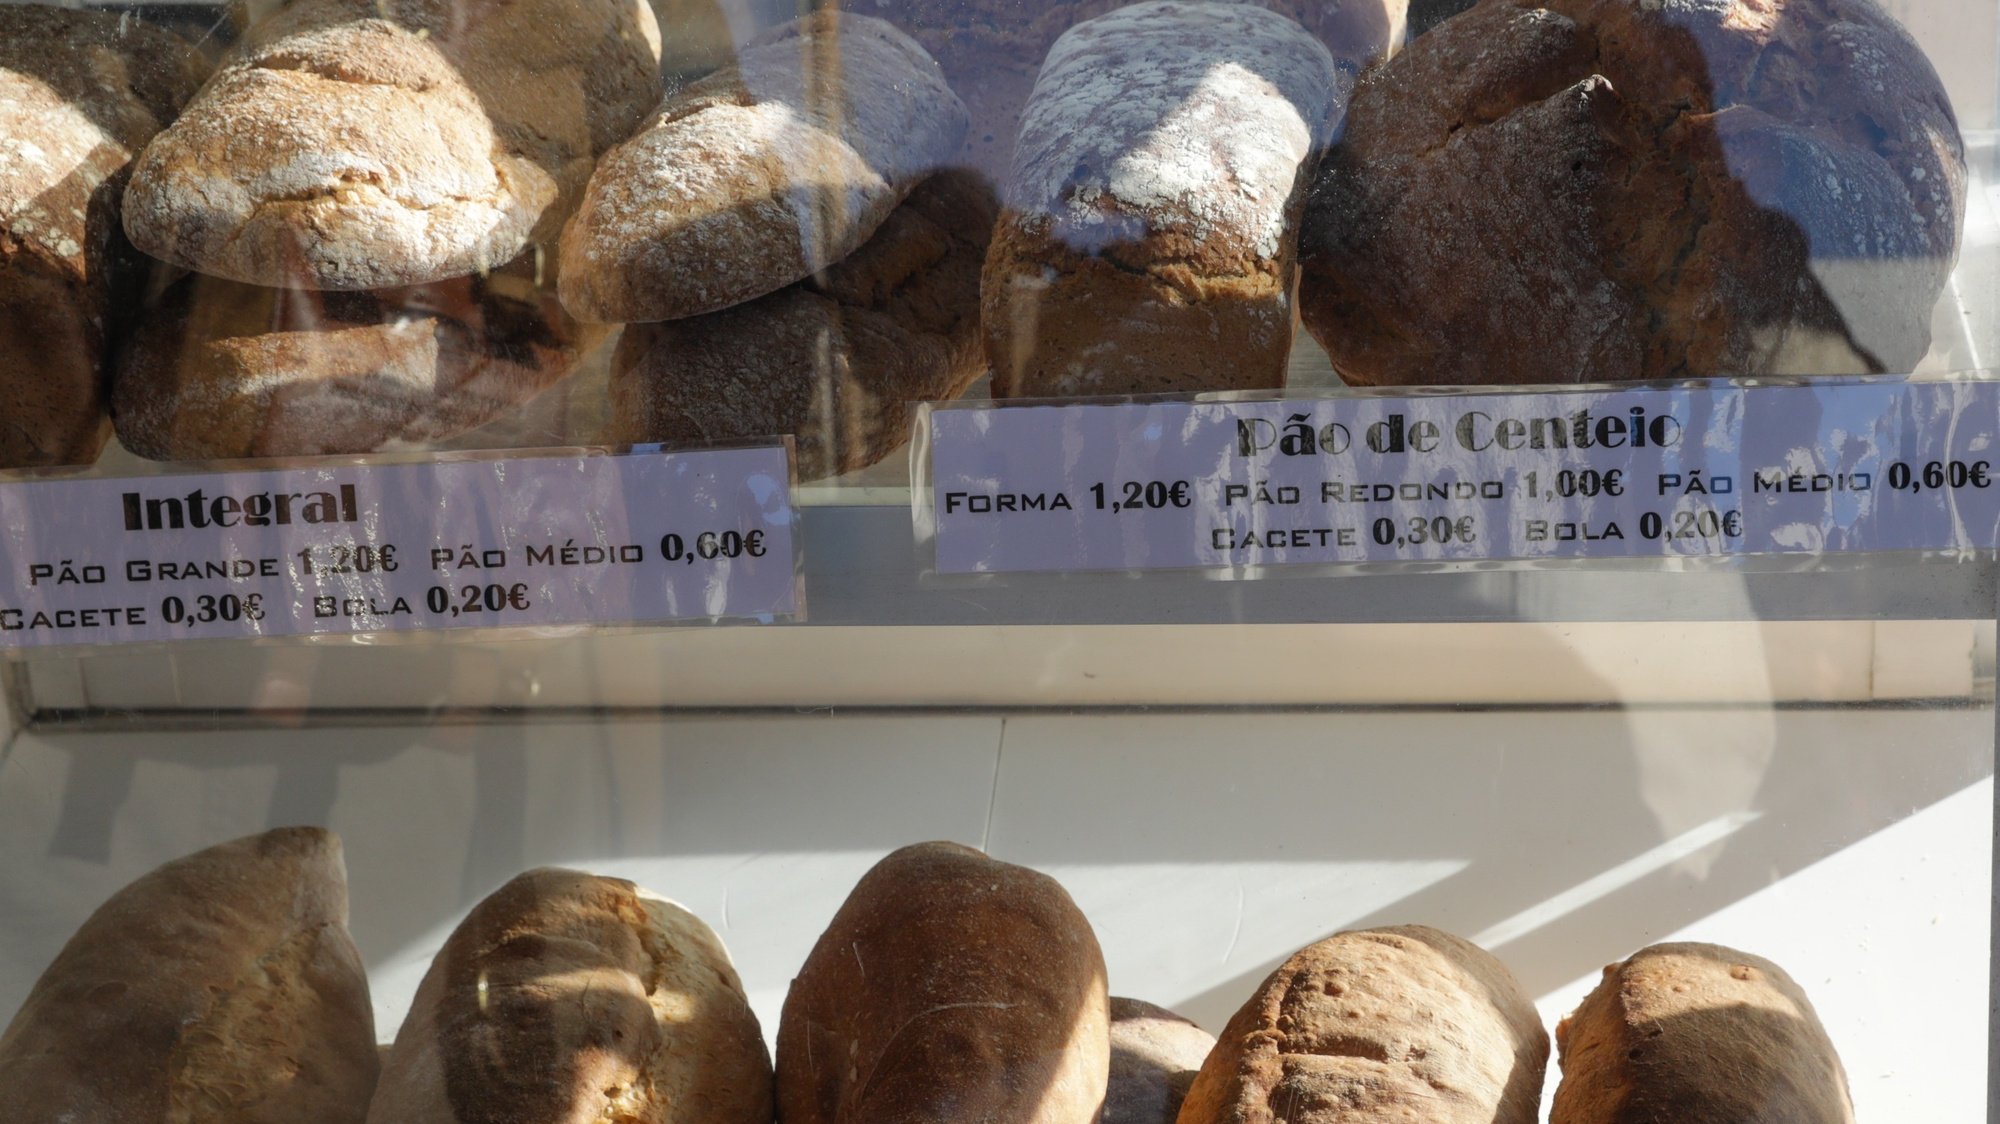 Vários tipos de pão expostos no mercado das Galinheiras em Lisboa, 06 de fevereiro de 2018. TIAGO PETINGA/LUSA